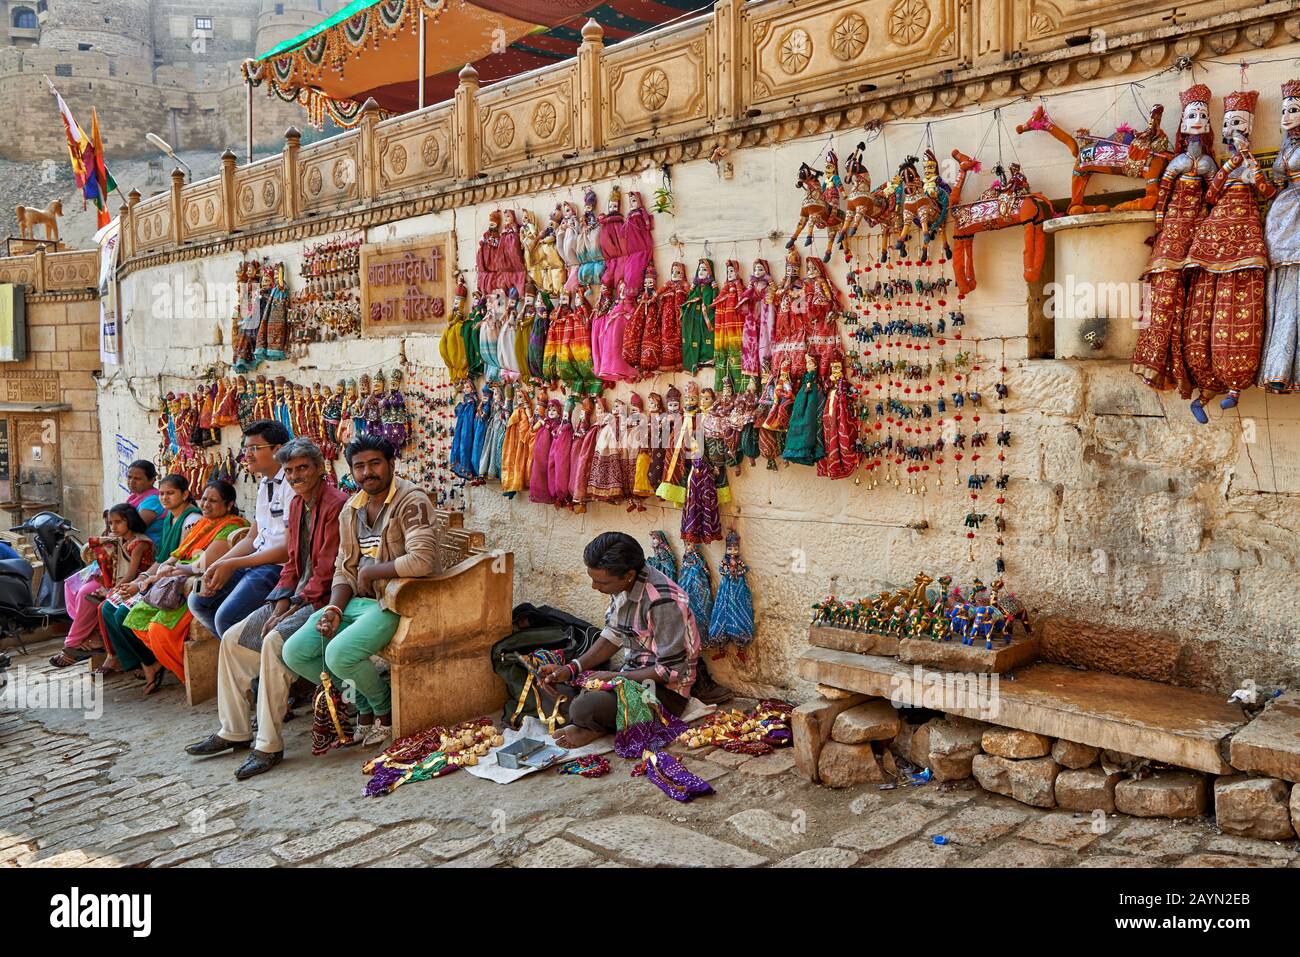 Tradizionalmente le donne vestite vendono souvenir nelle strade di Jaisalmer, Rajasthan, India Foto Stock